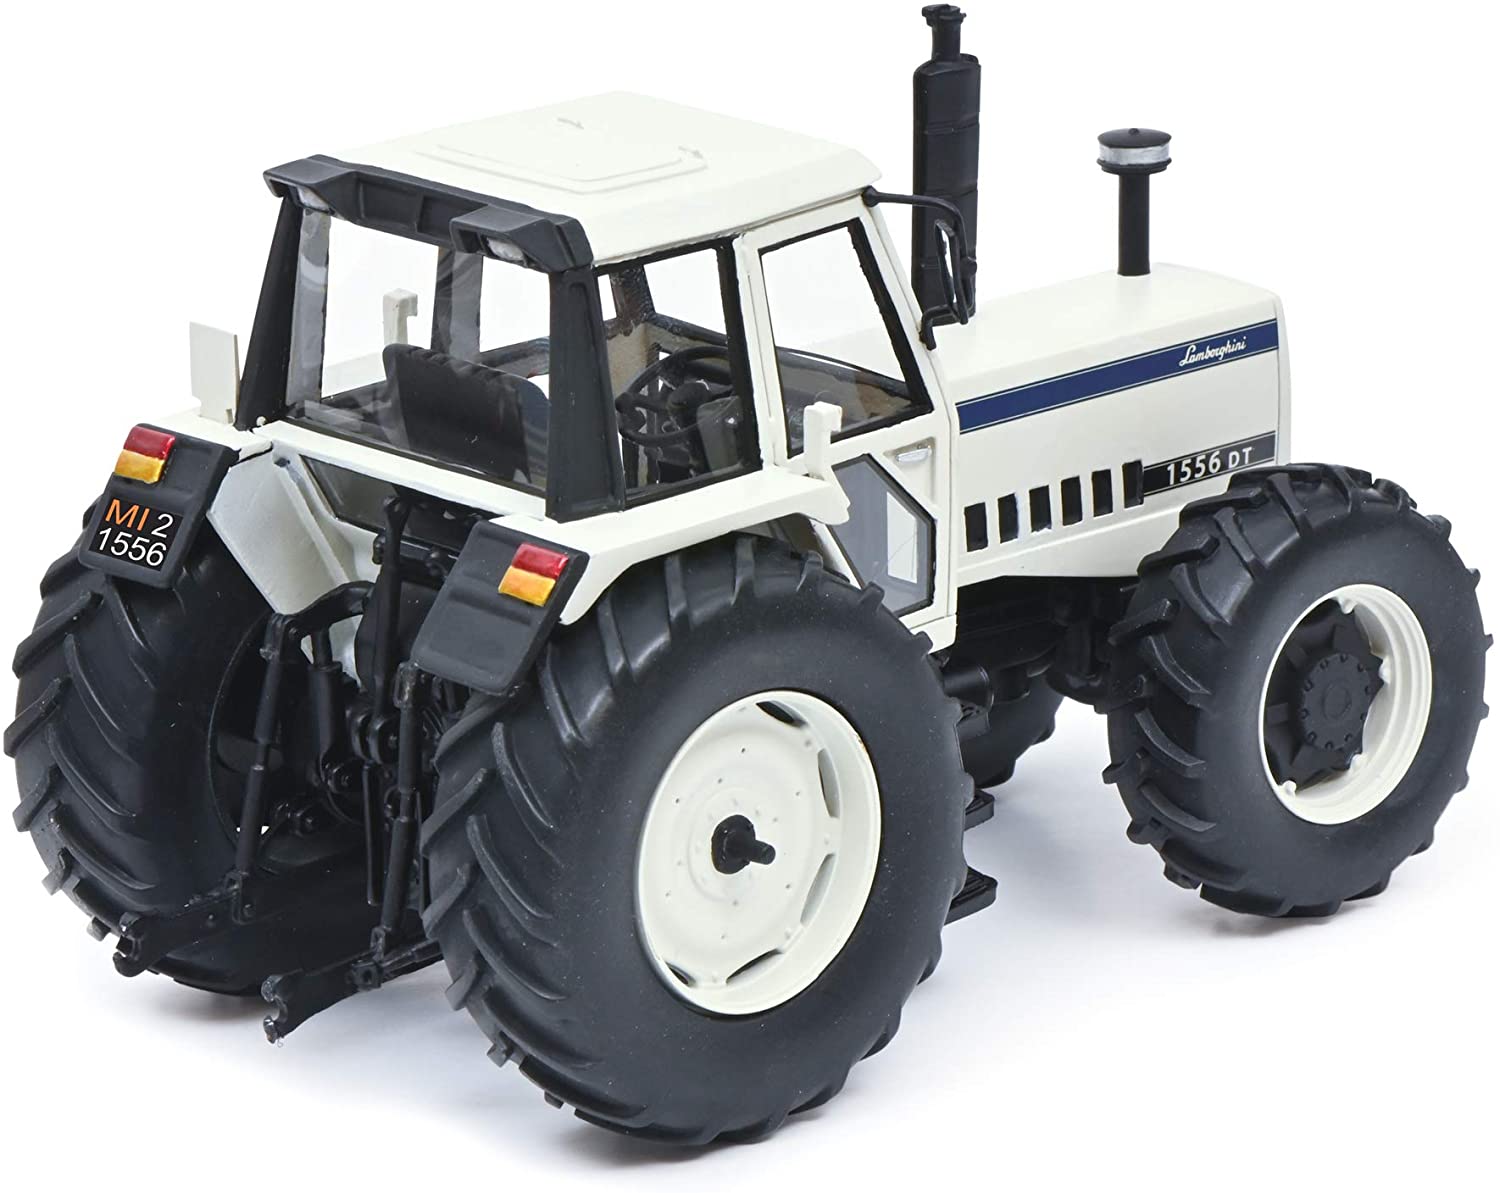 lamborghini 1556 dt tractor | diecast model | schuco 1:32